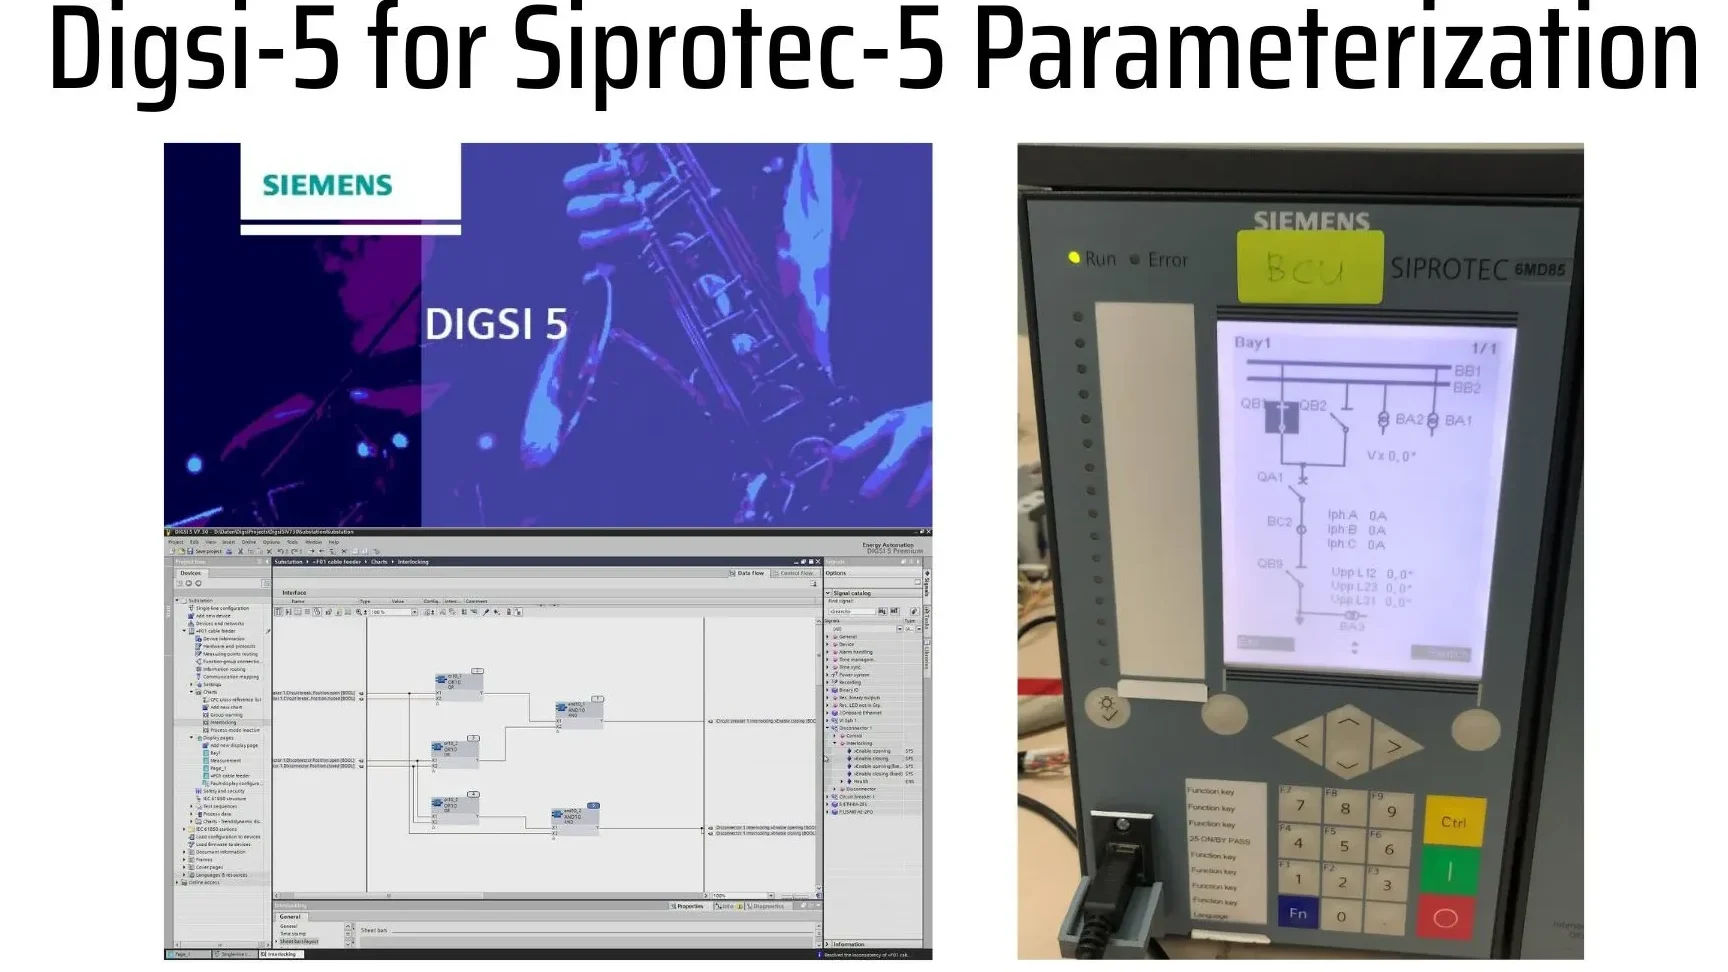 Digsi-5 for Siprotec-5 Parameterization